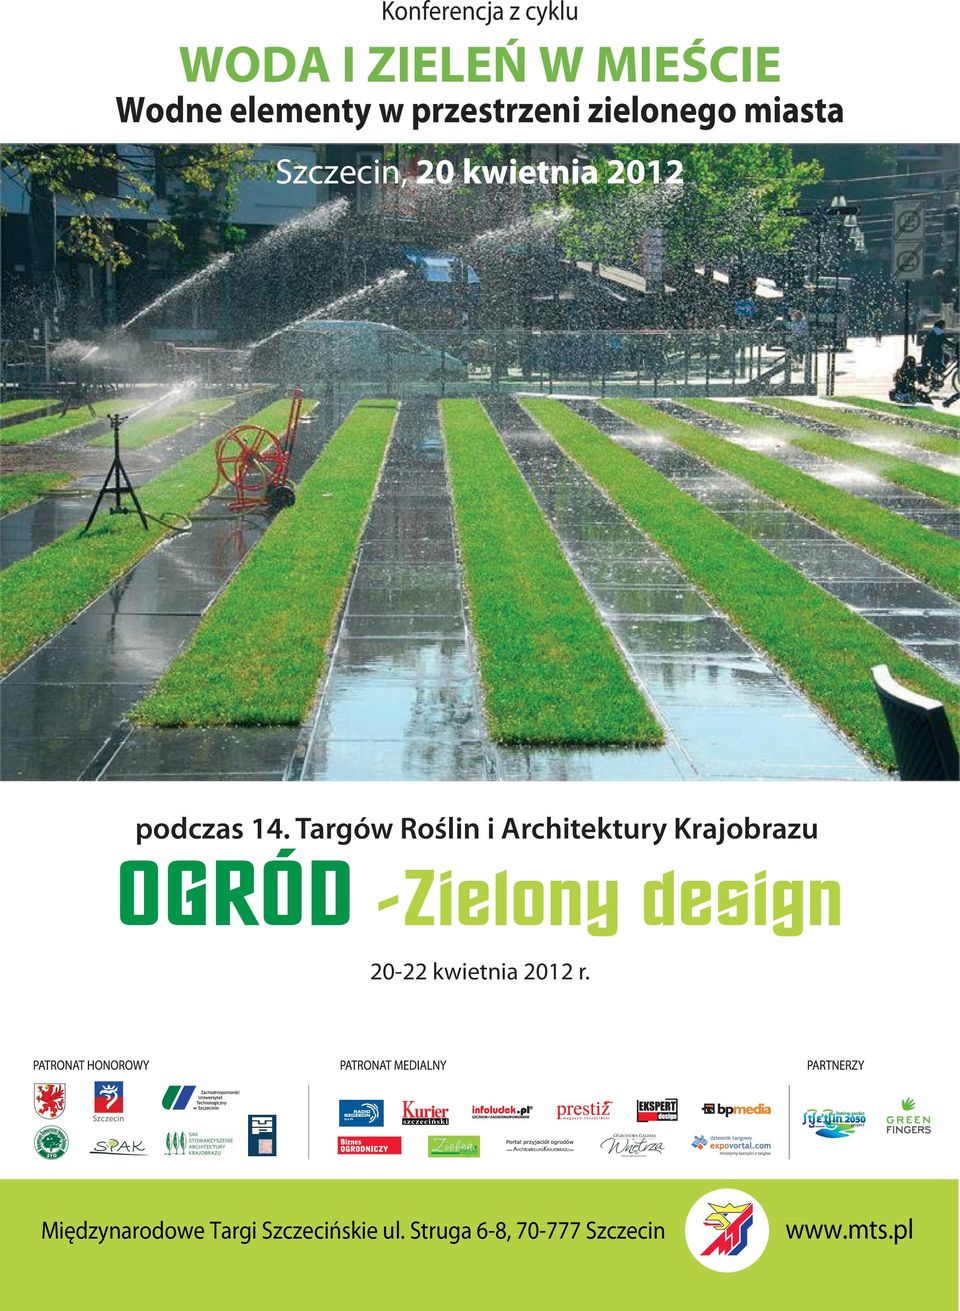 Targów Roślin i Architektury Krajobrazu 20-22 kwietnia 2012 r.